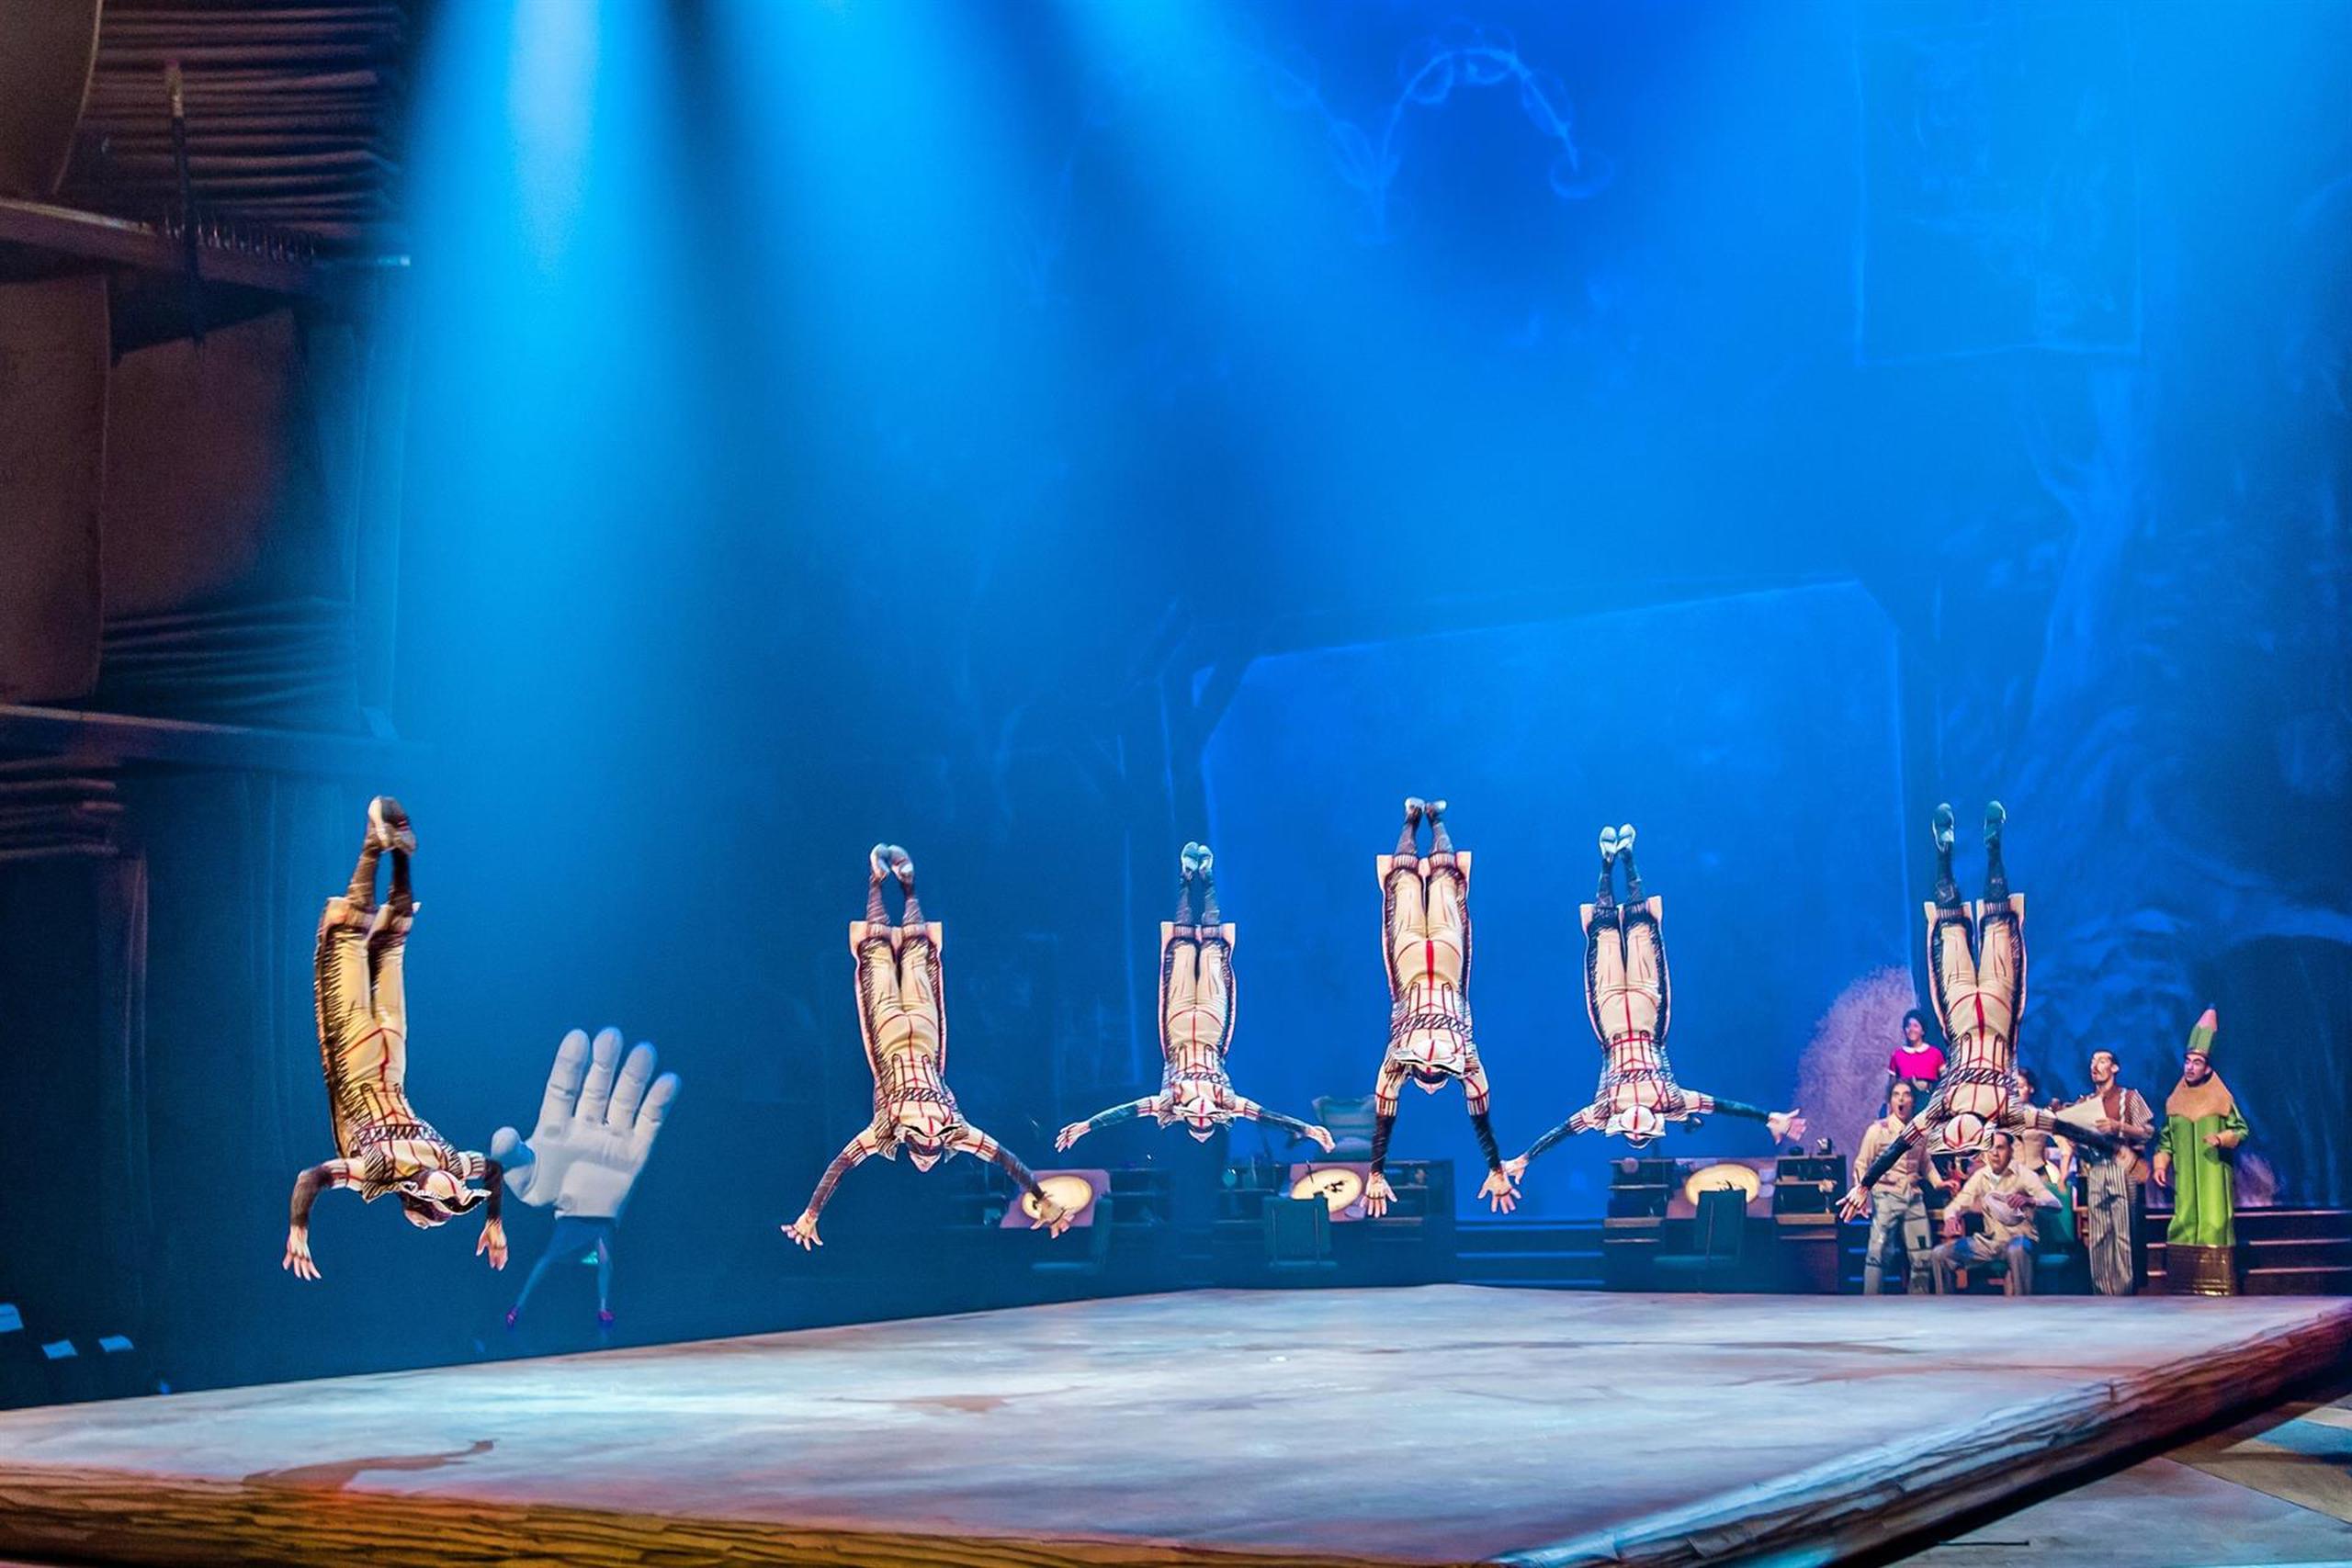 Un total de 64 artistas internacionales componen el elenco de “Drawn to Life”, el espectáculo número 50 del Cirque du Soleil y que coincide con las celebraciones por el 50 aniversario de Walt Disney World Resort.